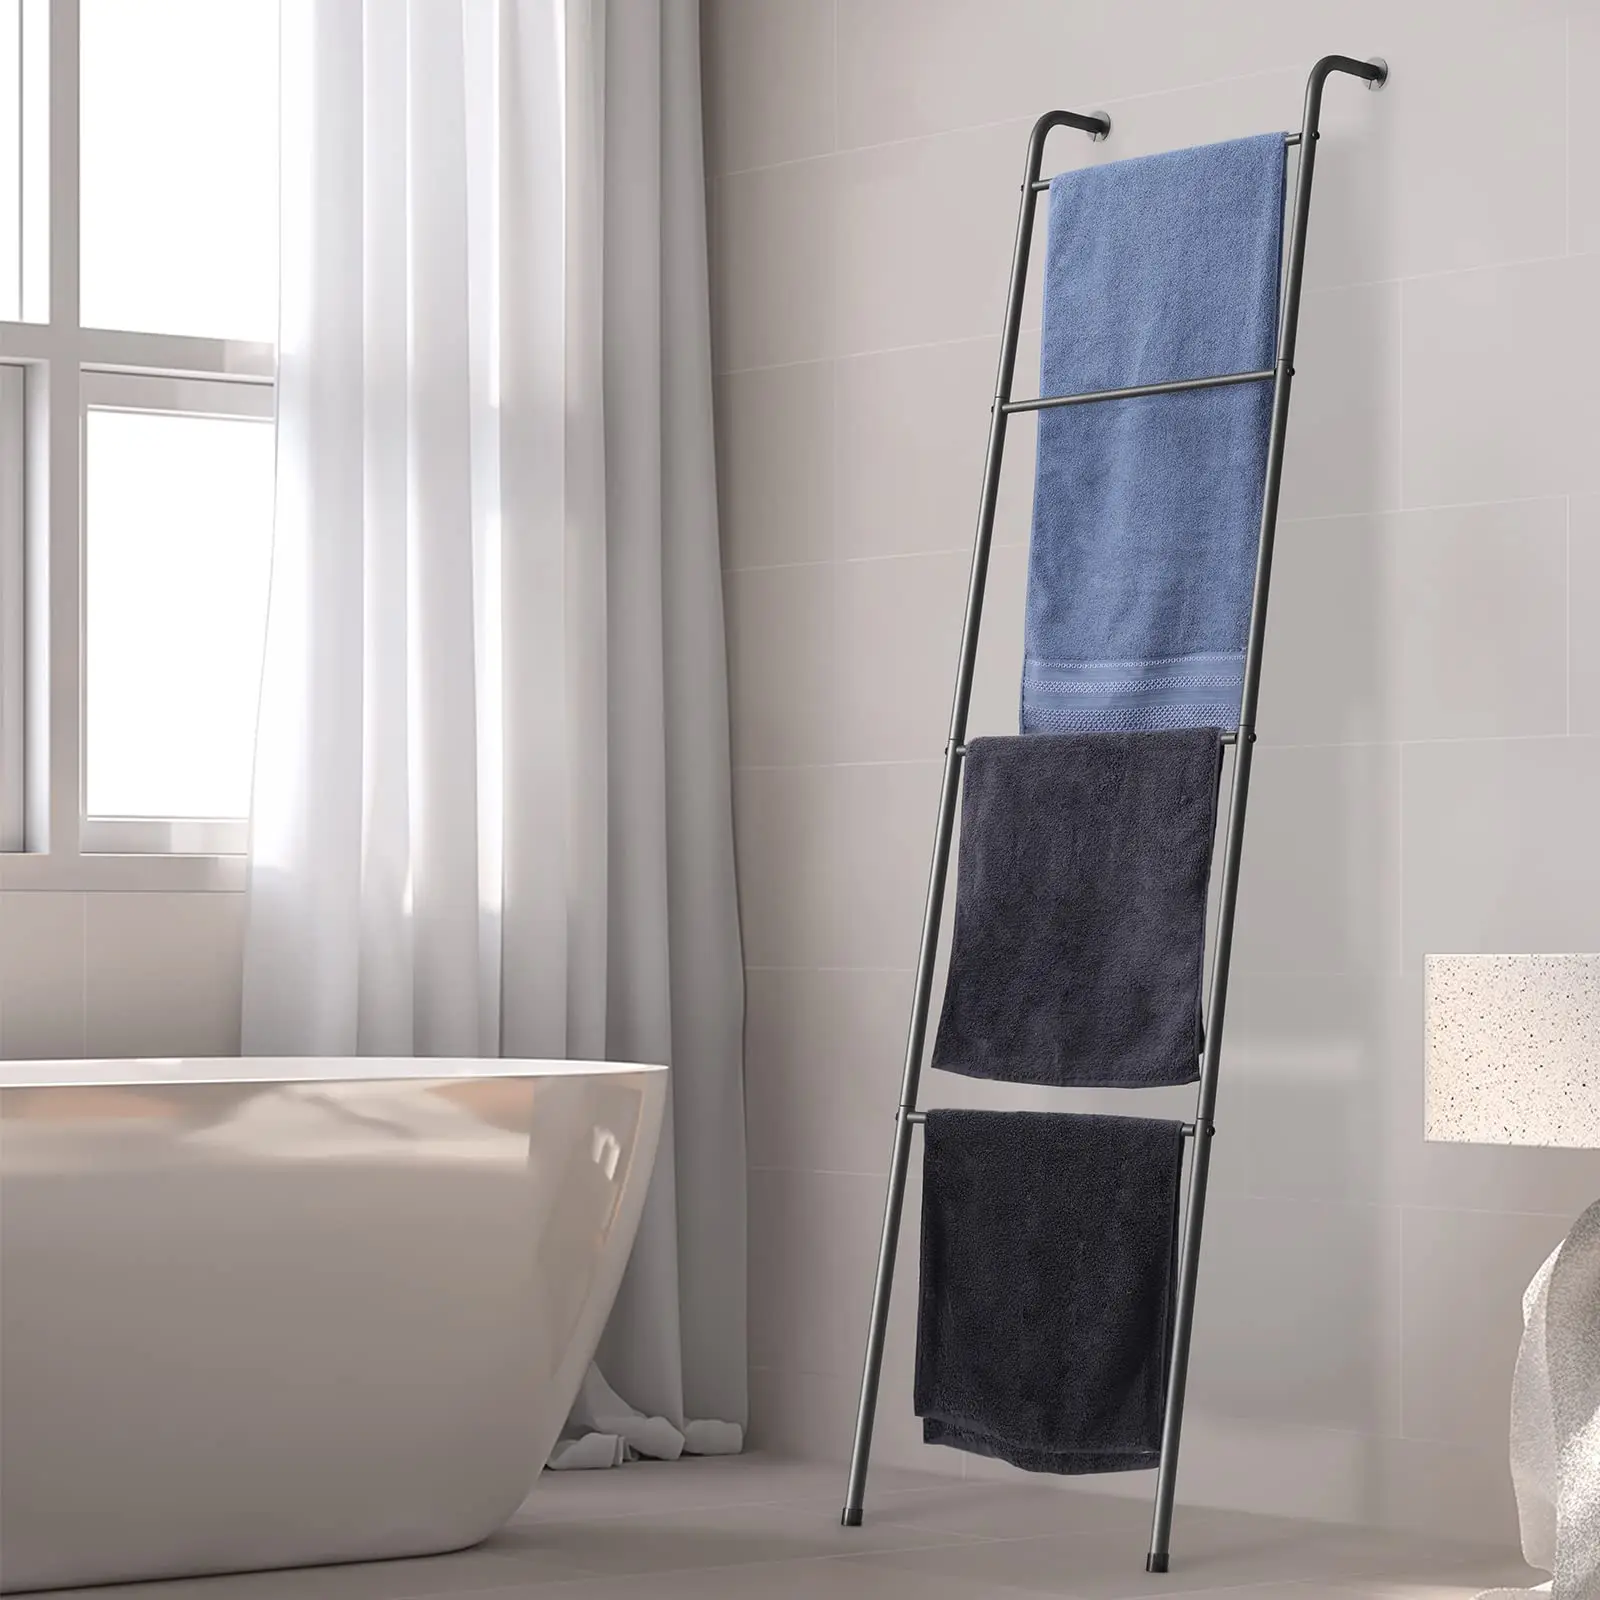 Hot Sales Living Room Bathroom Decorative Metal Holder Blanket Ladder Outdoor Towel Rack For Pool